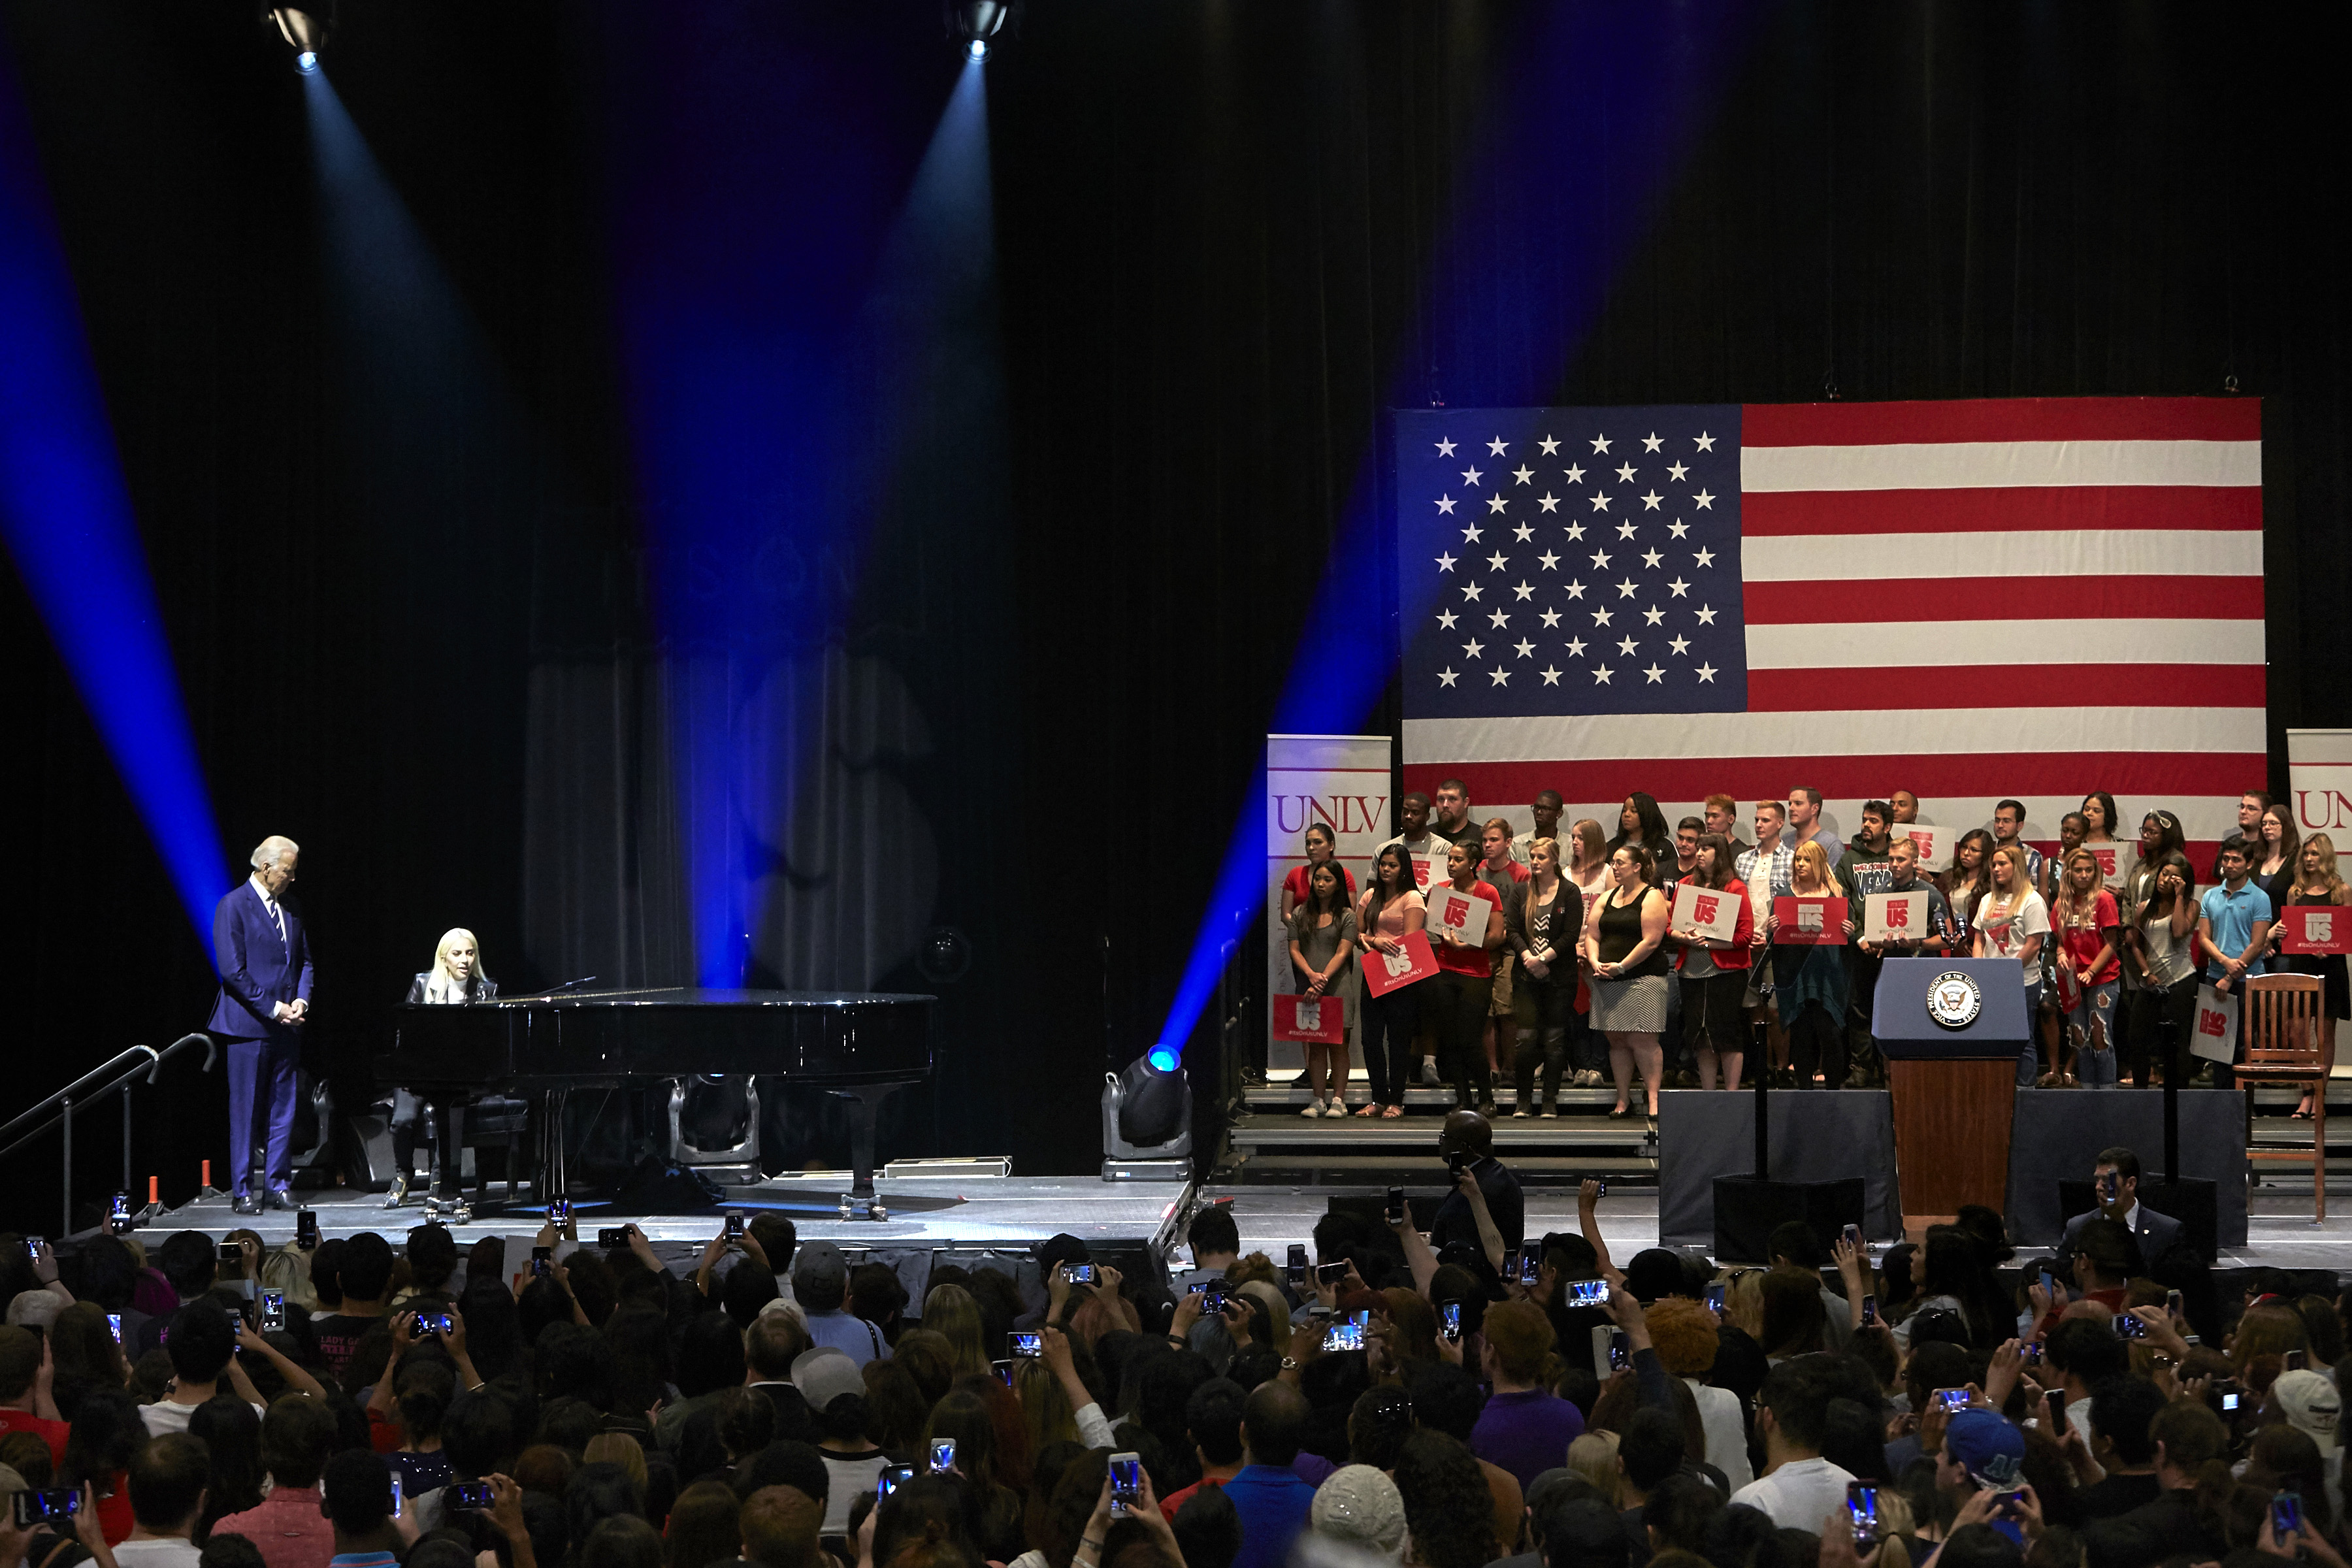 "It's On Us" Lady Gaga & Joe Biden at UNLV